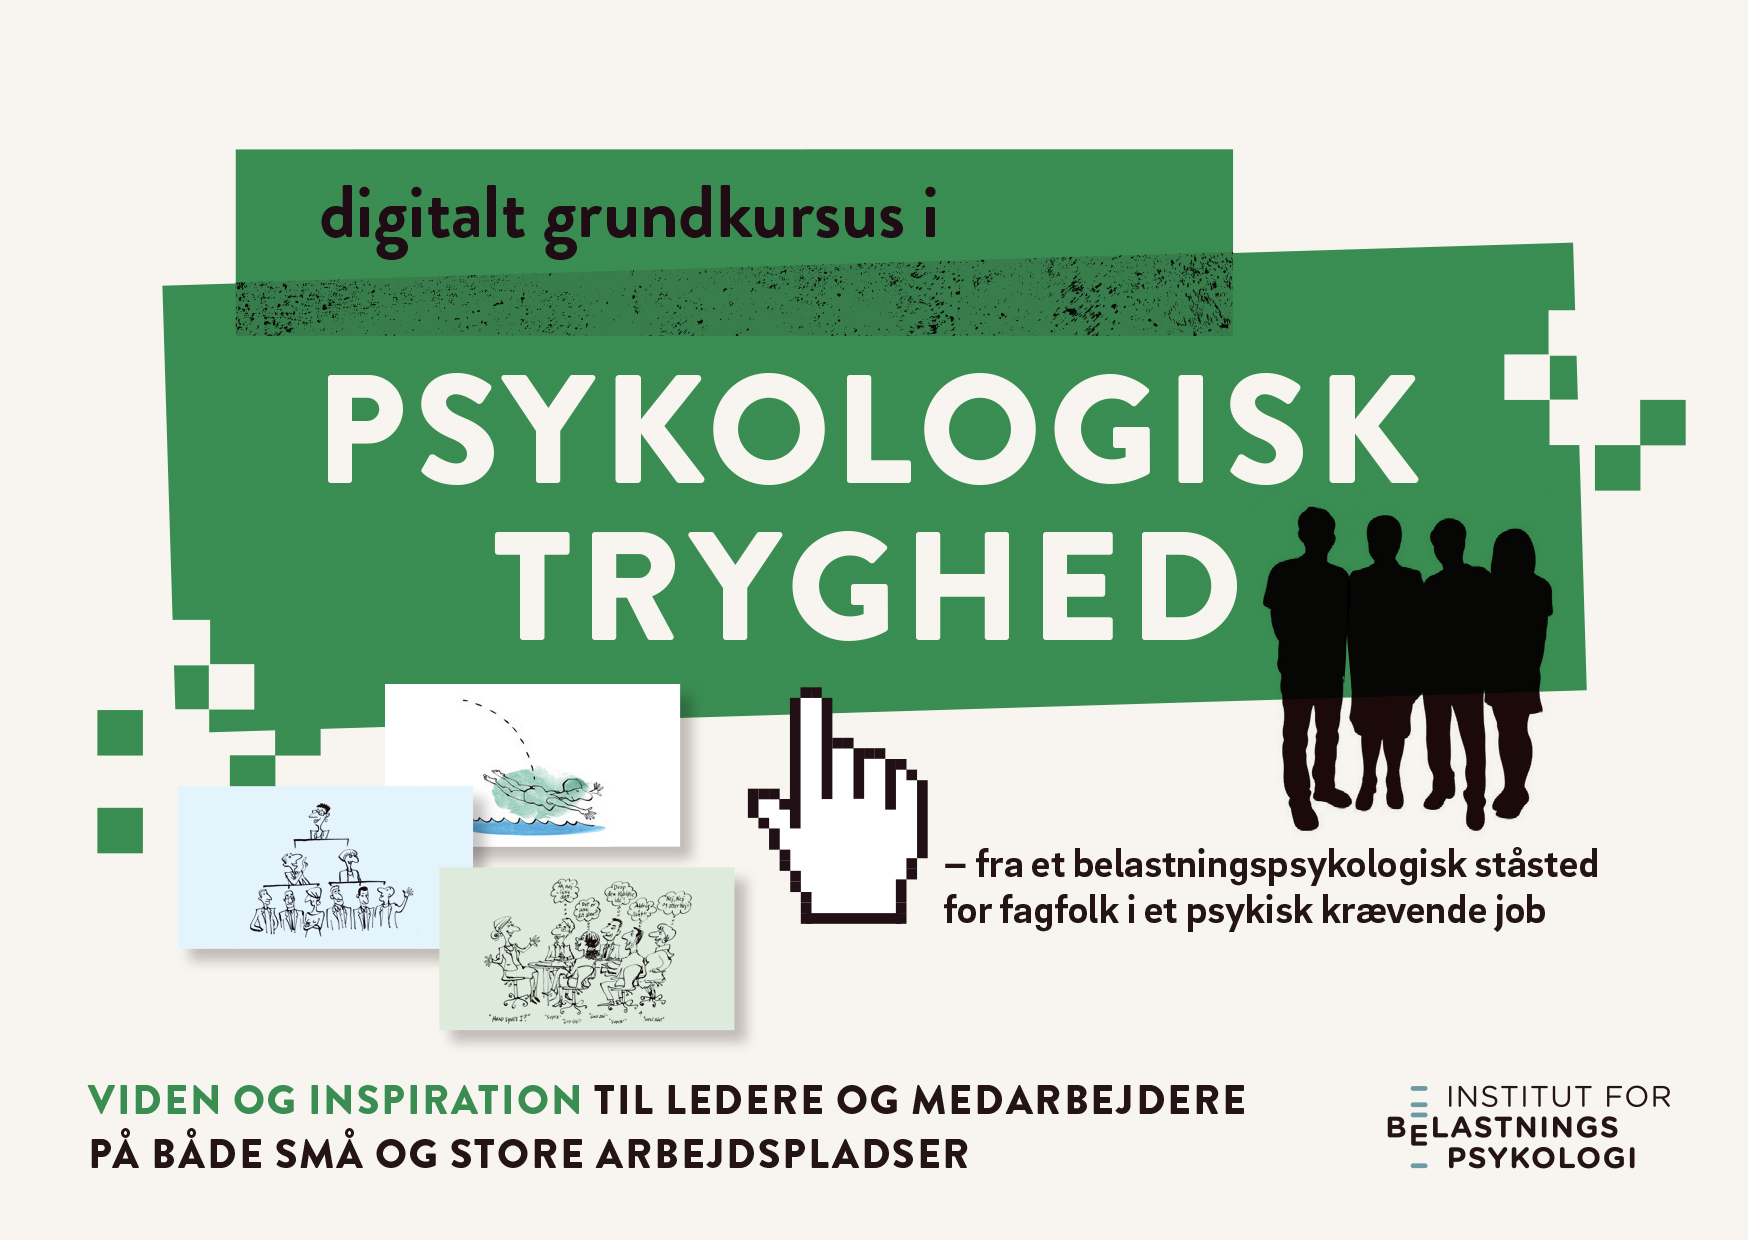 ICTUS_Digitalt kursus i Psykologisk Tryghed_A6.indd